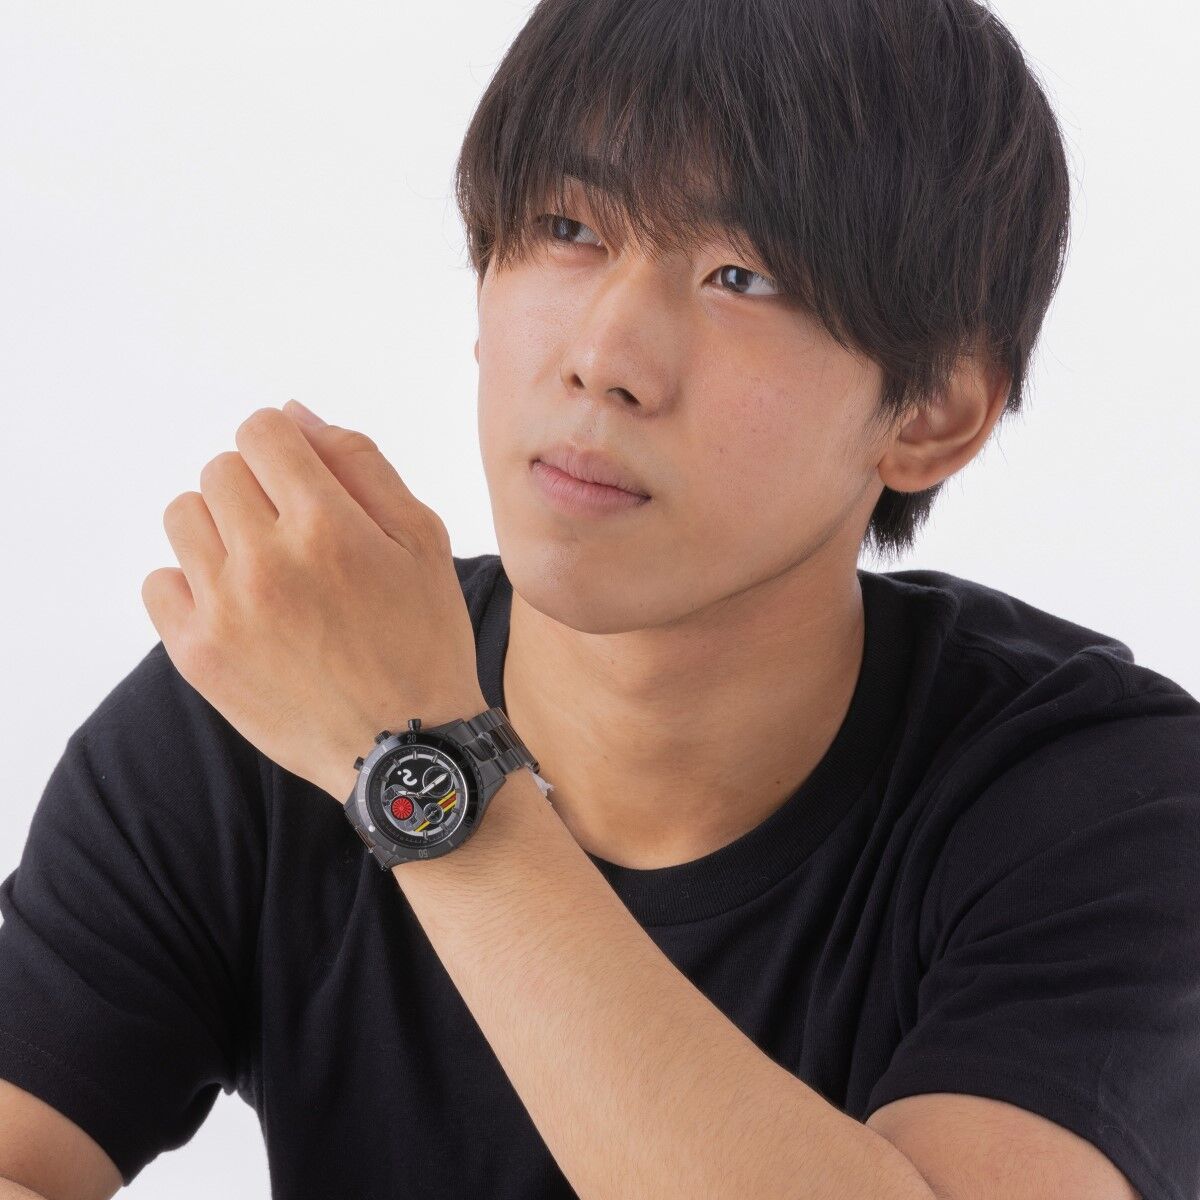 昭和仮面ライダー クロノグラフ腕時計【Live Action Watch】BLACK ...